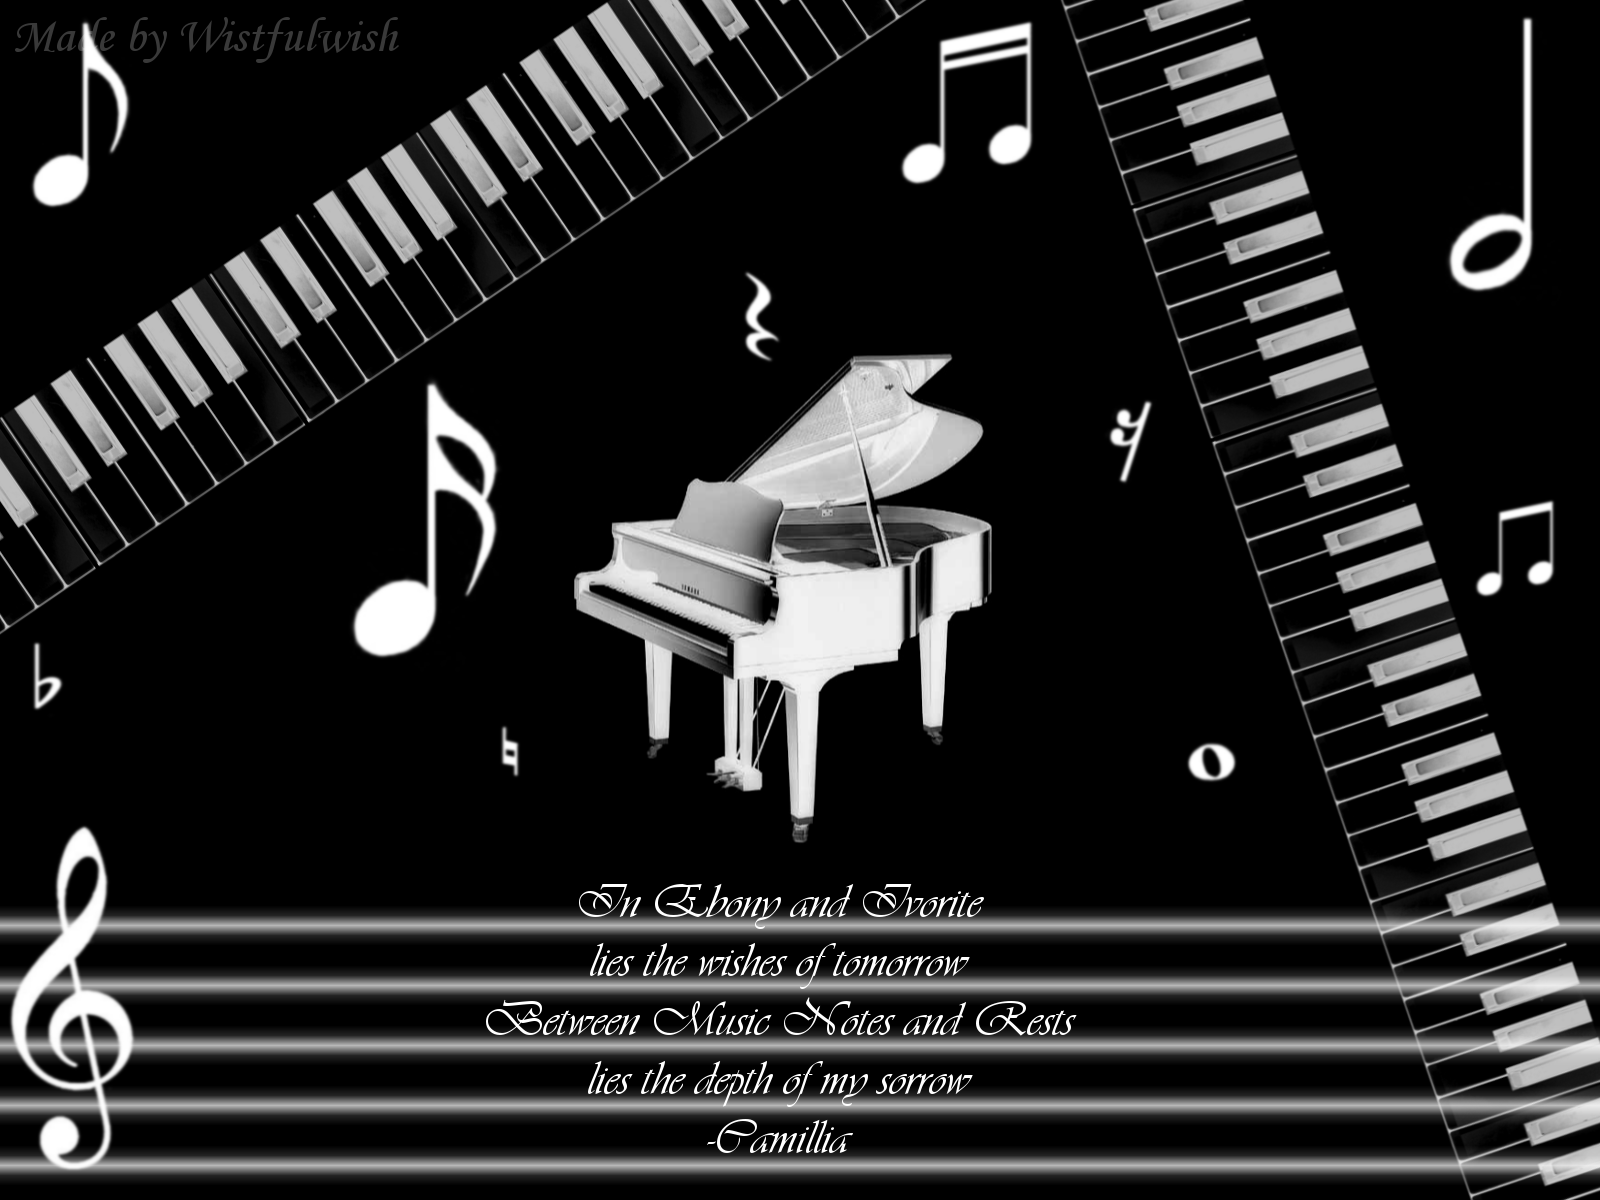 hình ảnh  Bàn phím Bw đàn piano Piano điện đen và trắng nhạc cụ Bàn  phím âm nhạc Piano kỹ thuật số Nhiếp ảnh đơn sắc nghệ sĩ piano Chơi đàn